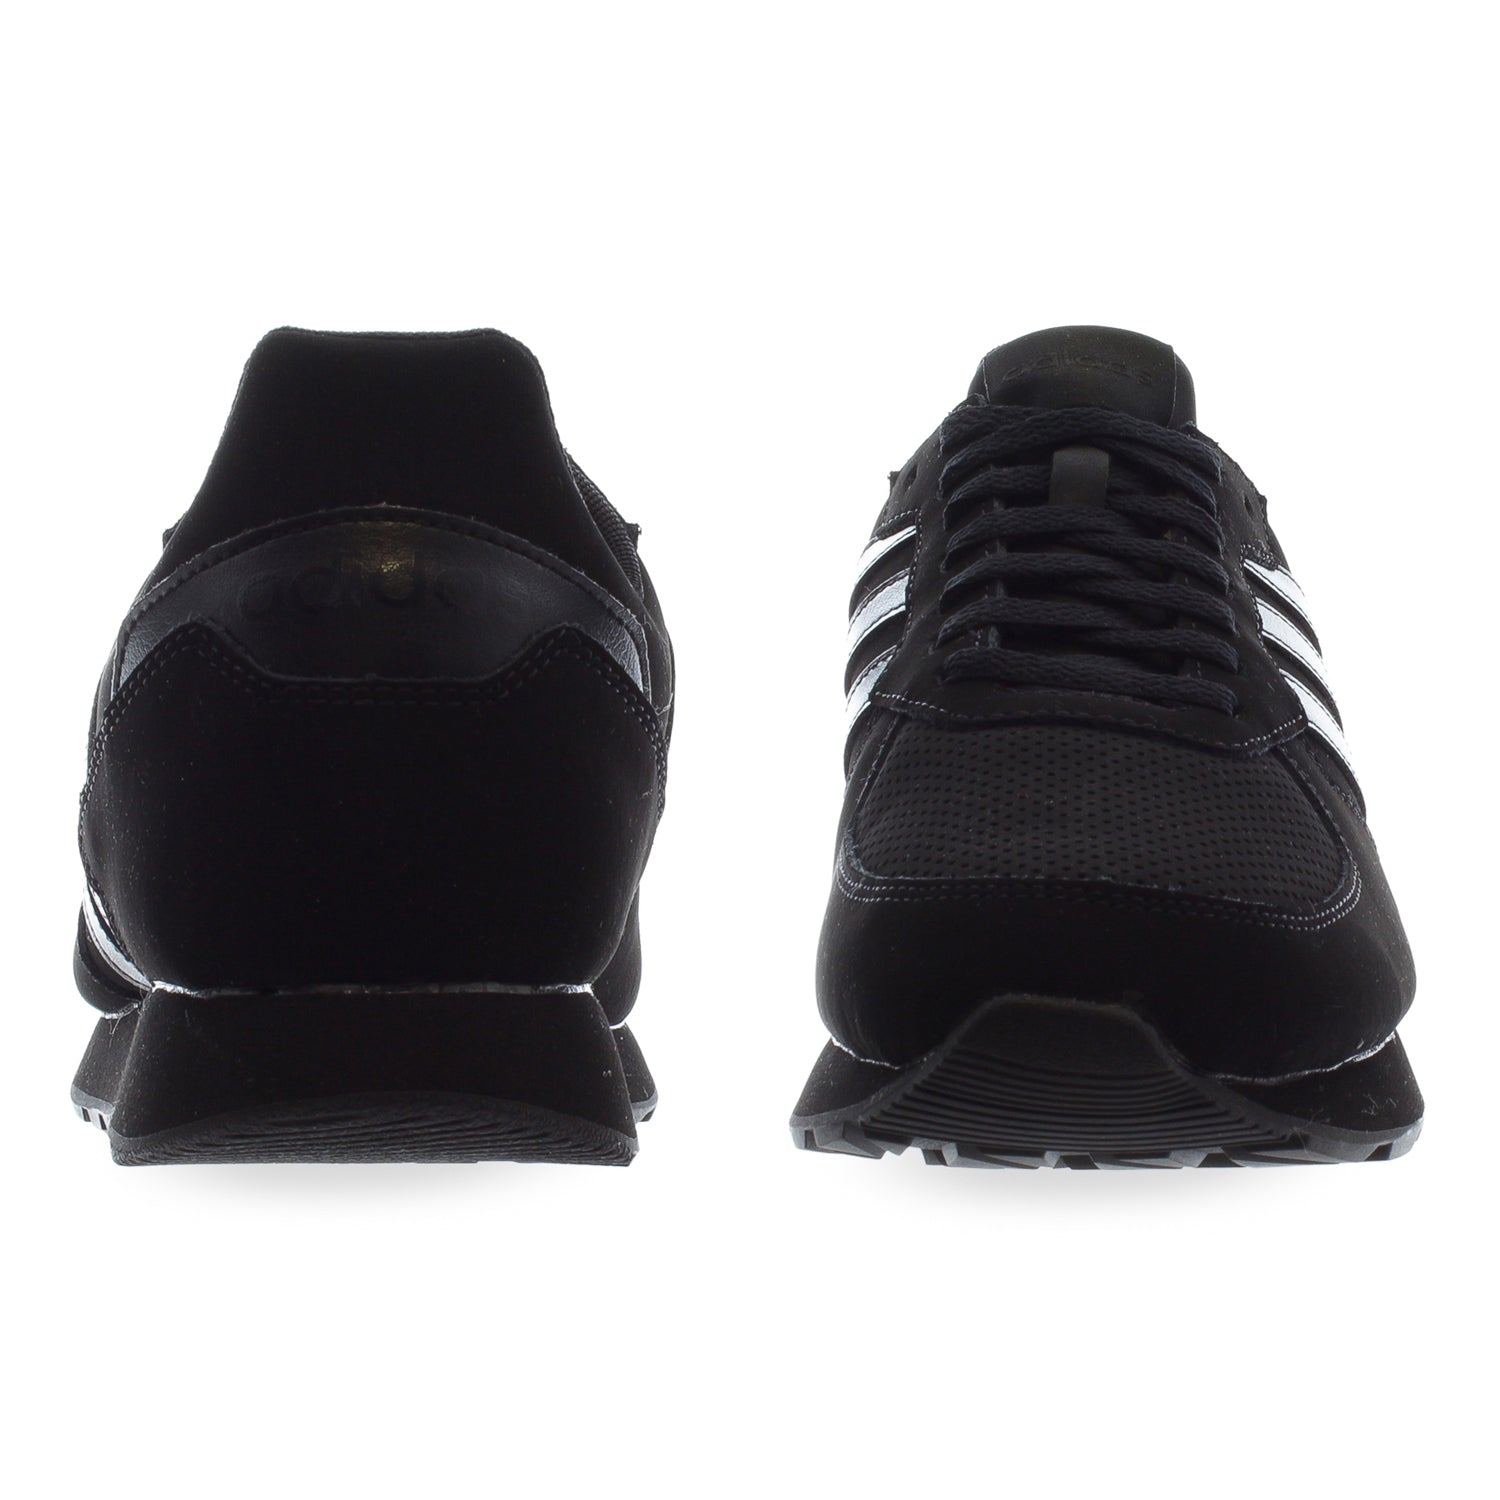 8K - F36889 Negro - Hombre | Shoelander.com - Footwear Retail